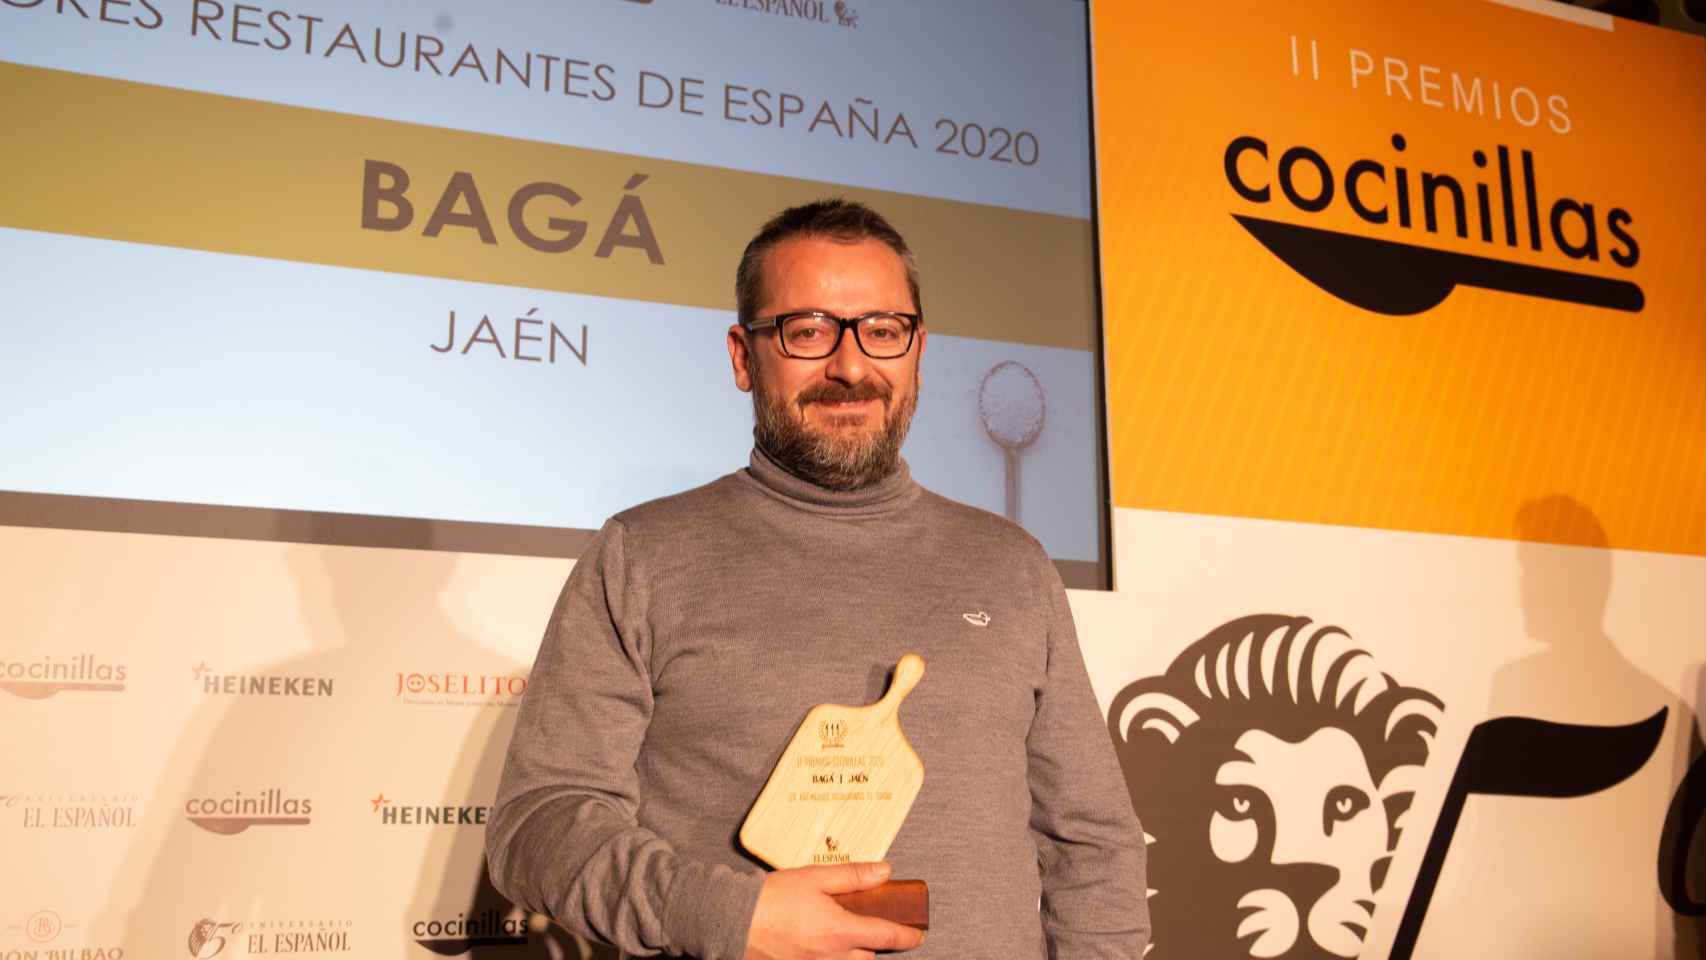 Pedro Sánchez (Bagá) recogiendo el Premio Cocinillas